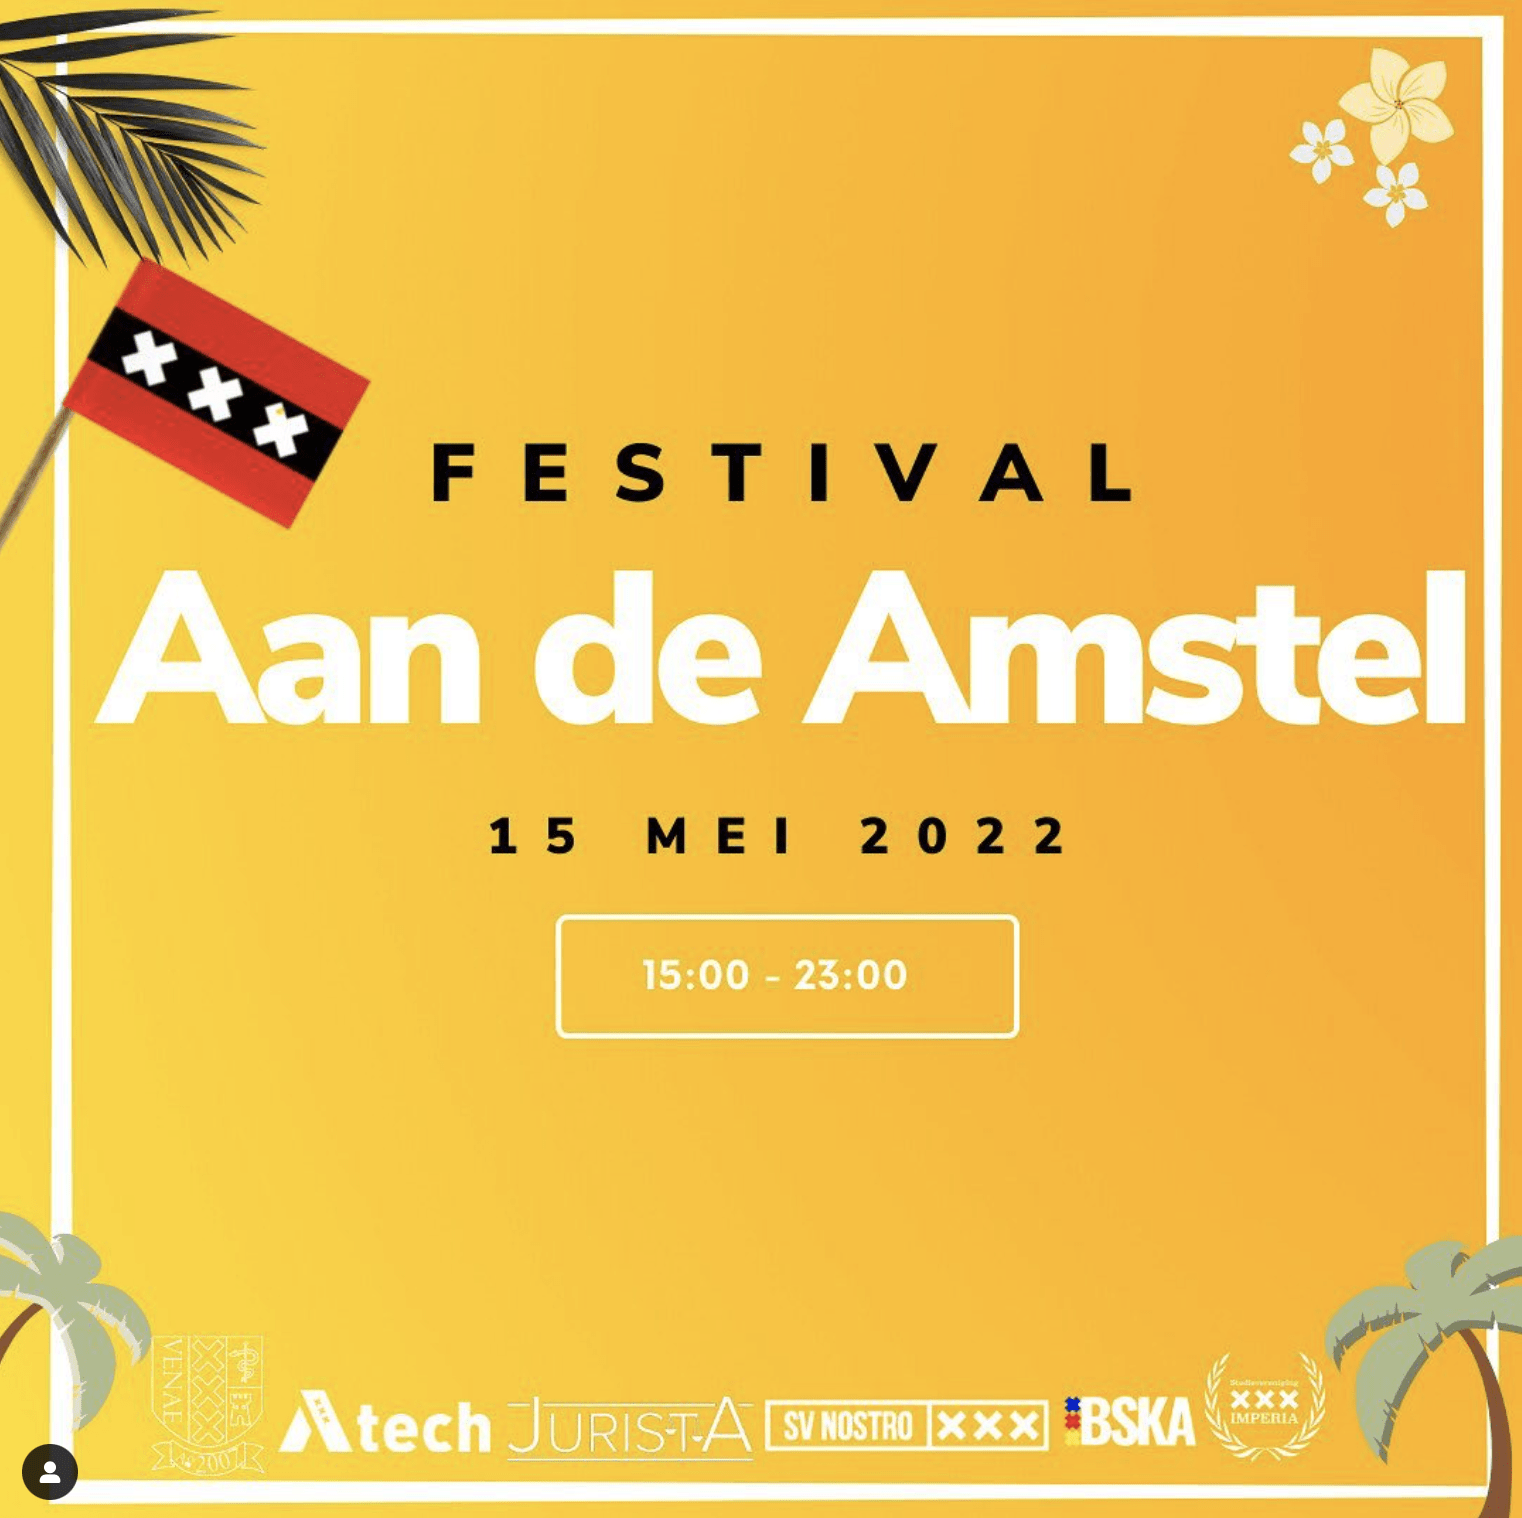 Festival Aan de Amstel!